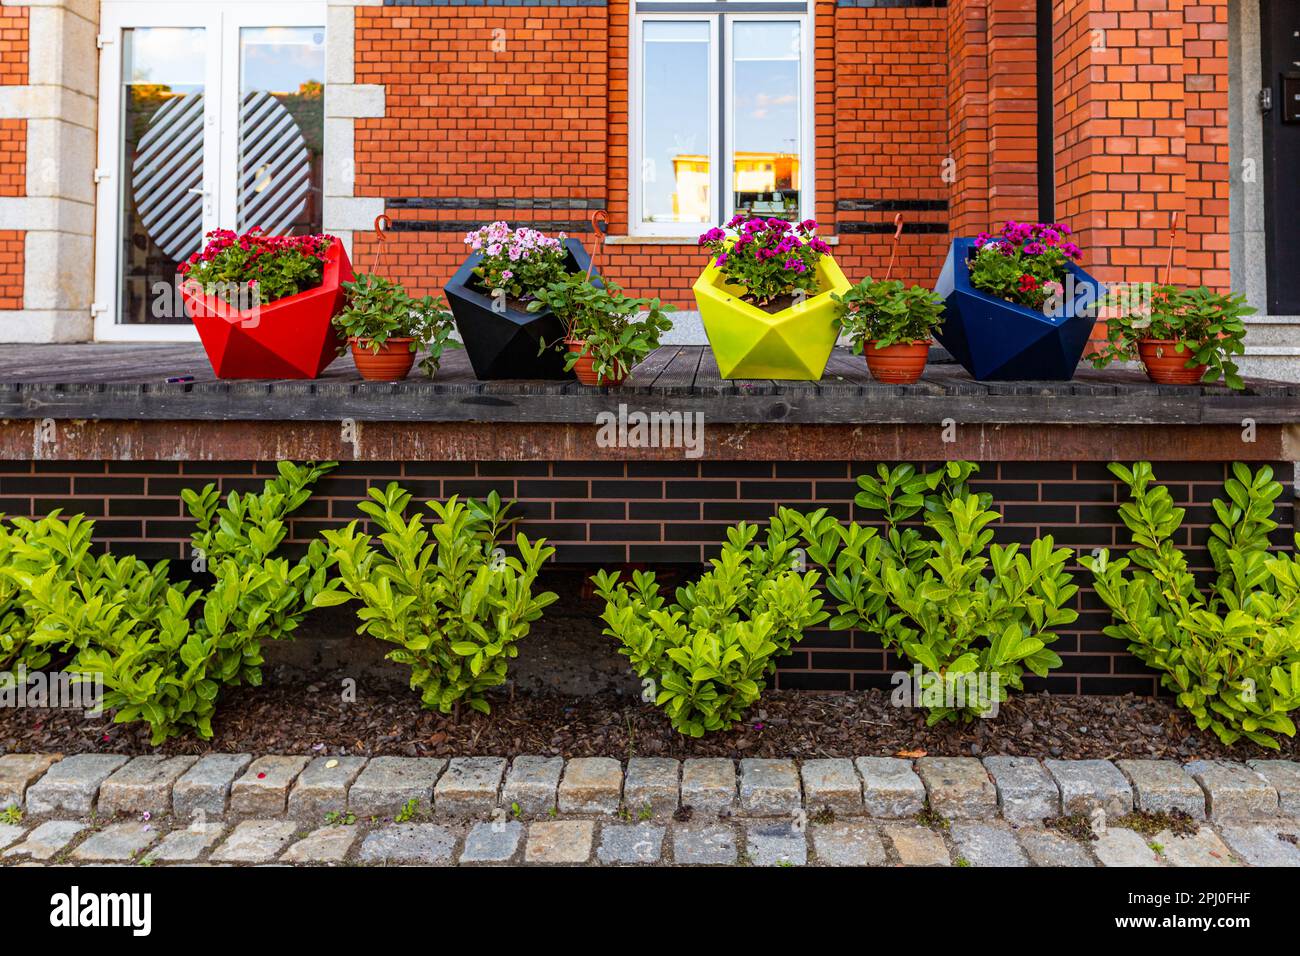 Breslau, Polen - Juni 2022: Vier große bunten Pflanzmaschinen und vier kleinere voller Blumen stehen vor einem modernen Bürogebäude aus rotem Ziegelstein Stockfoto